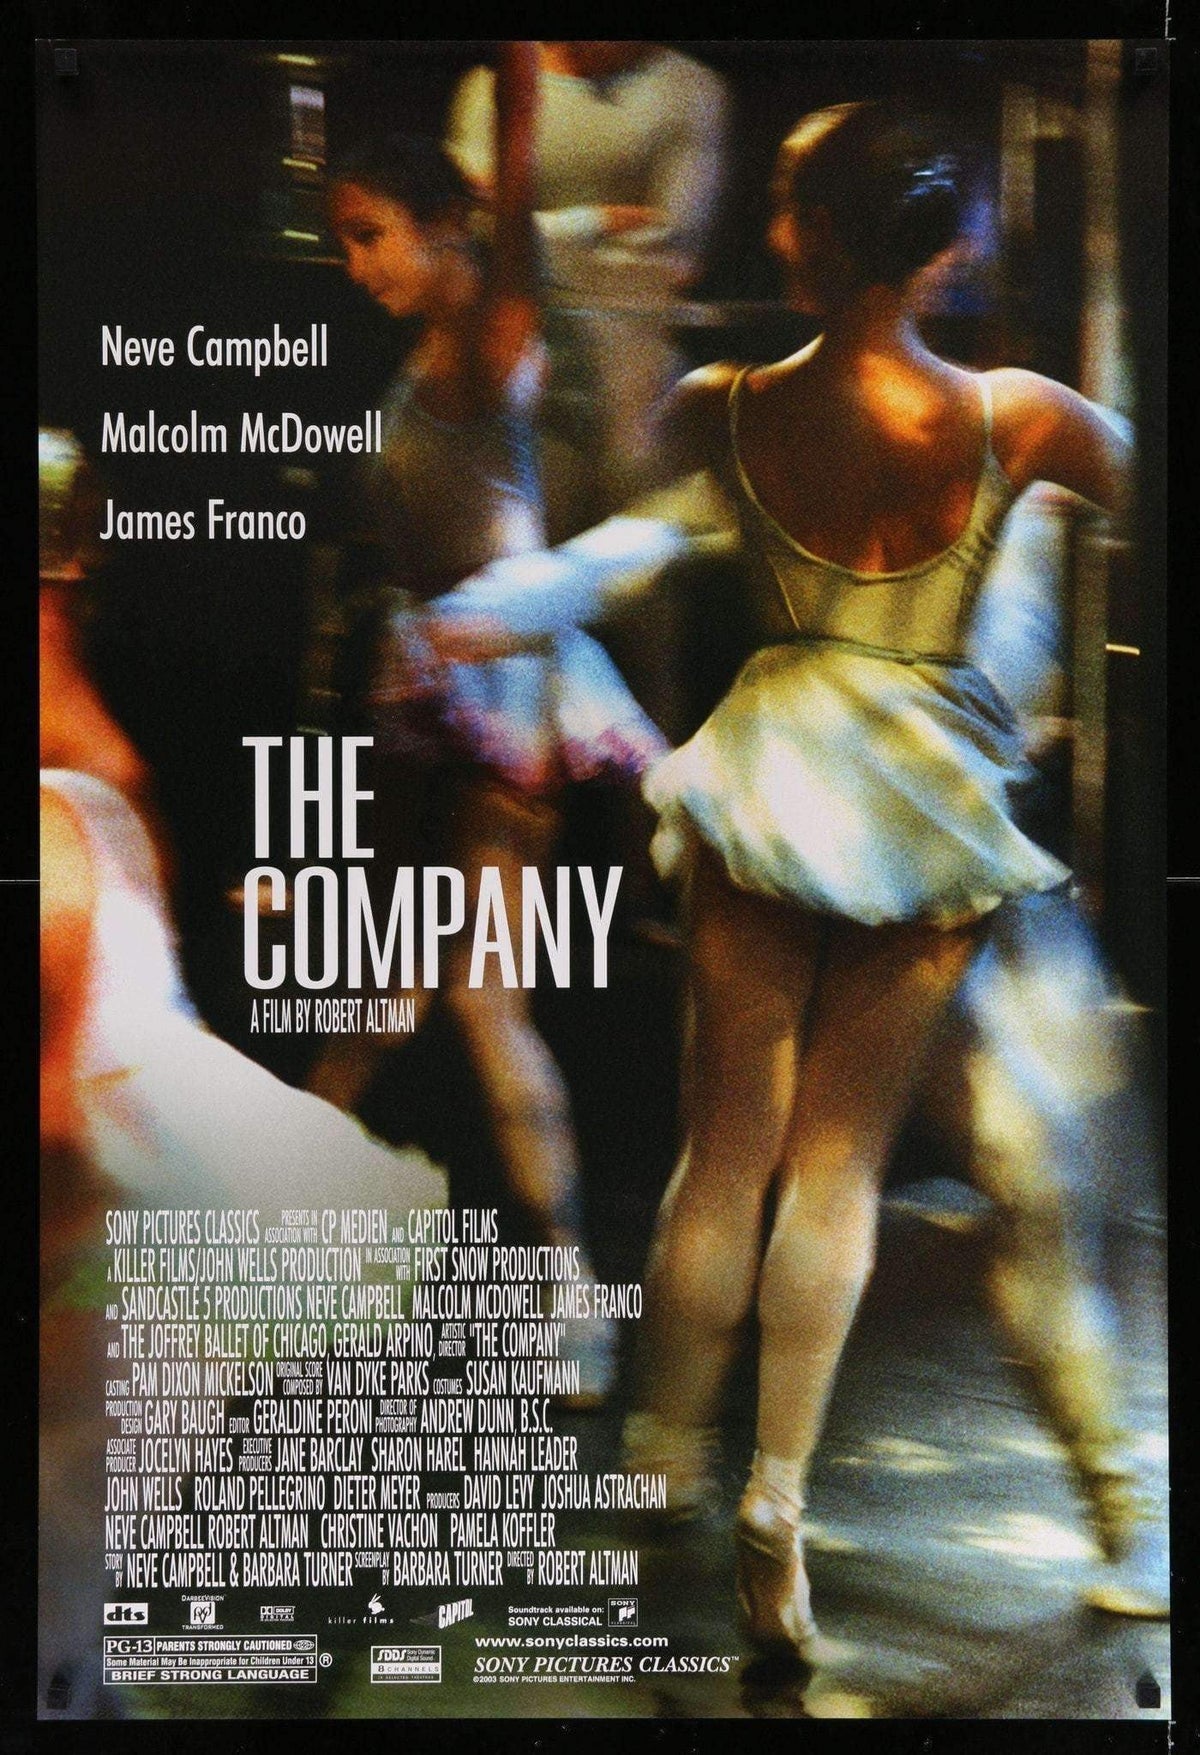 Company (2003) original movie poster for sale at Original Film Art